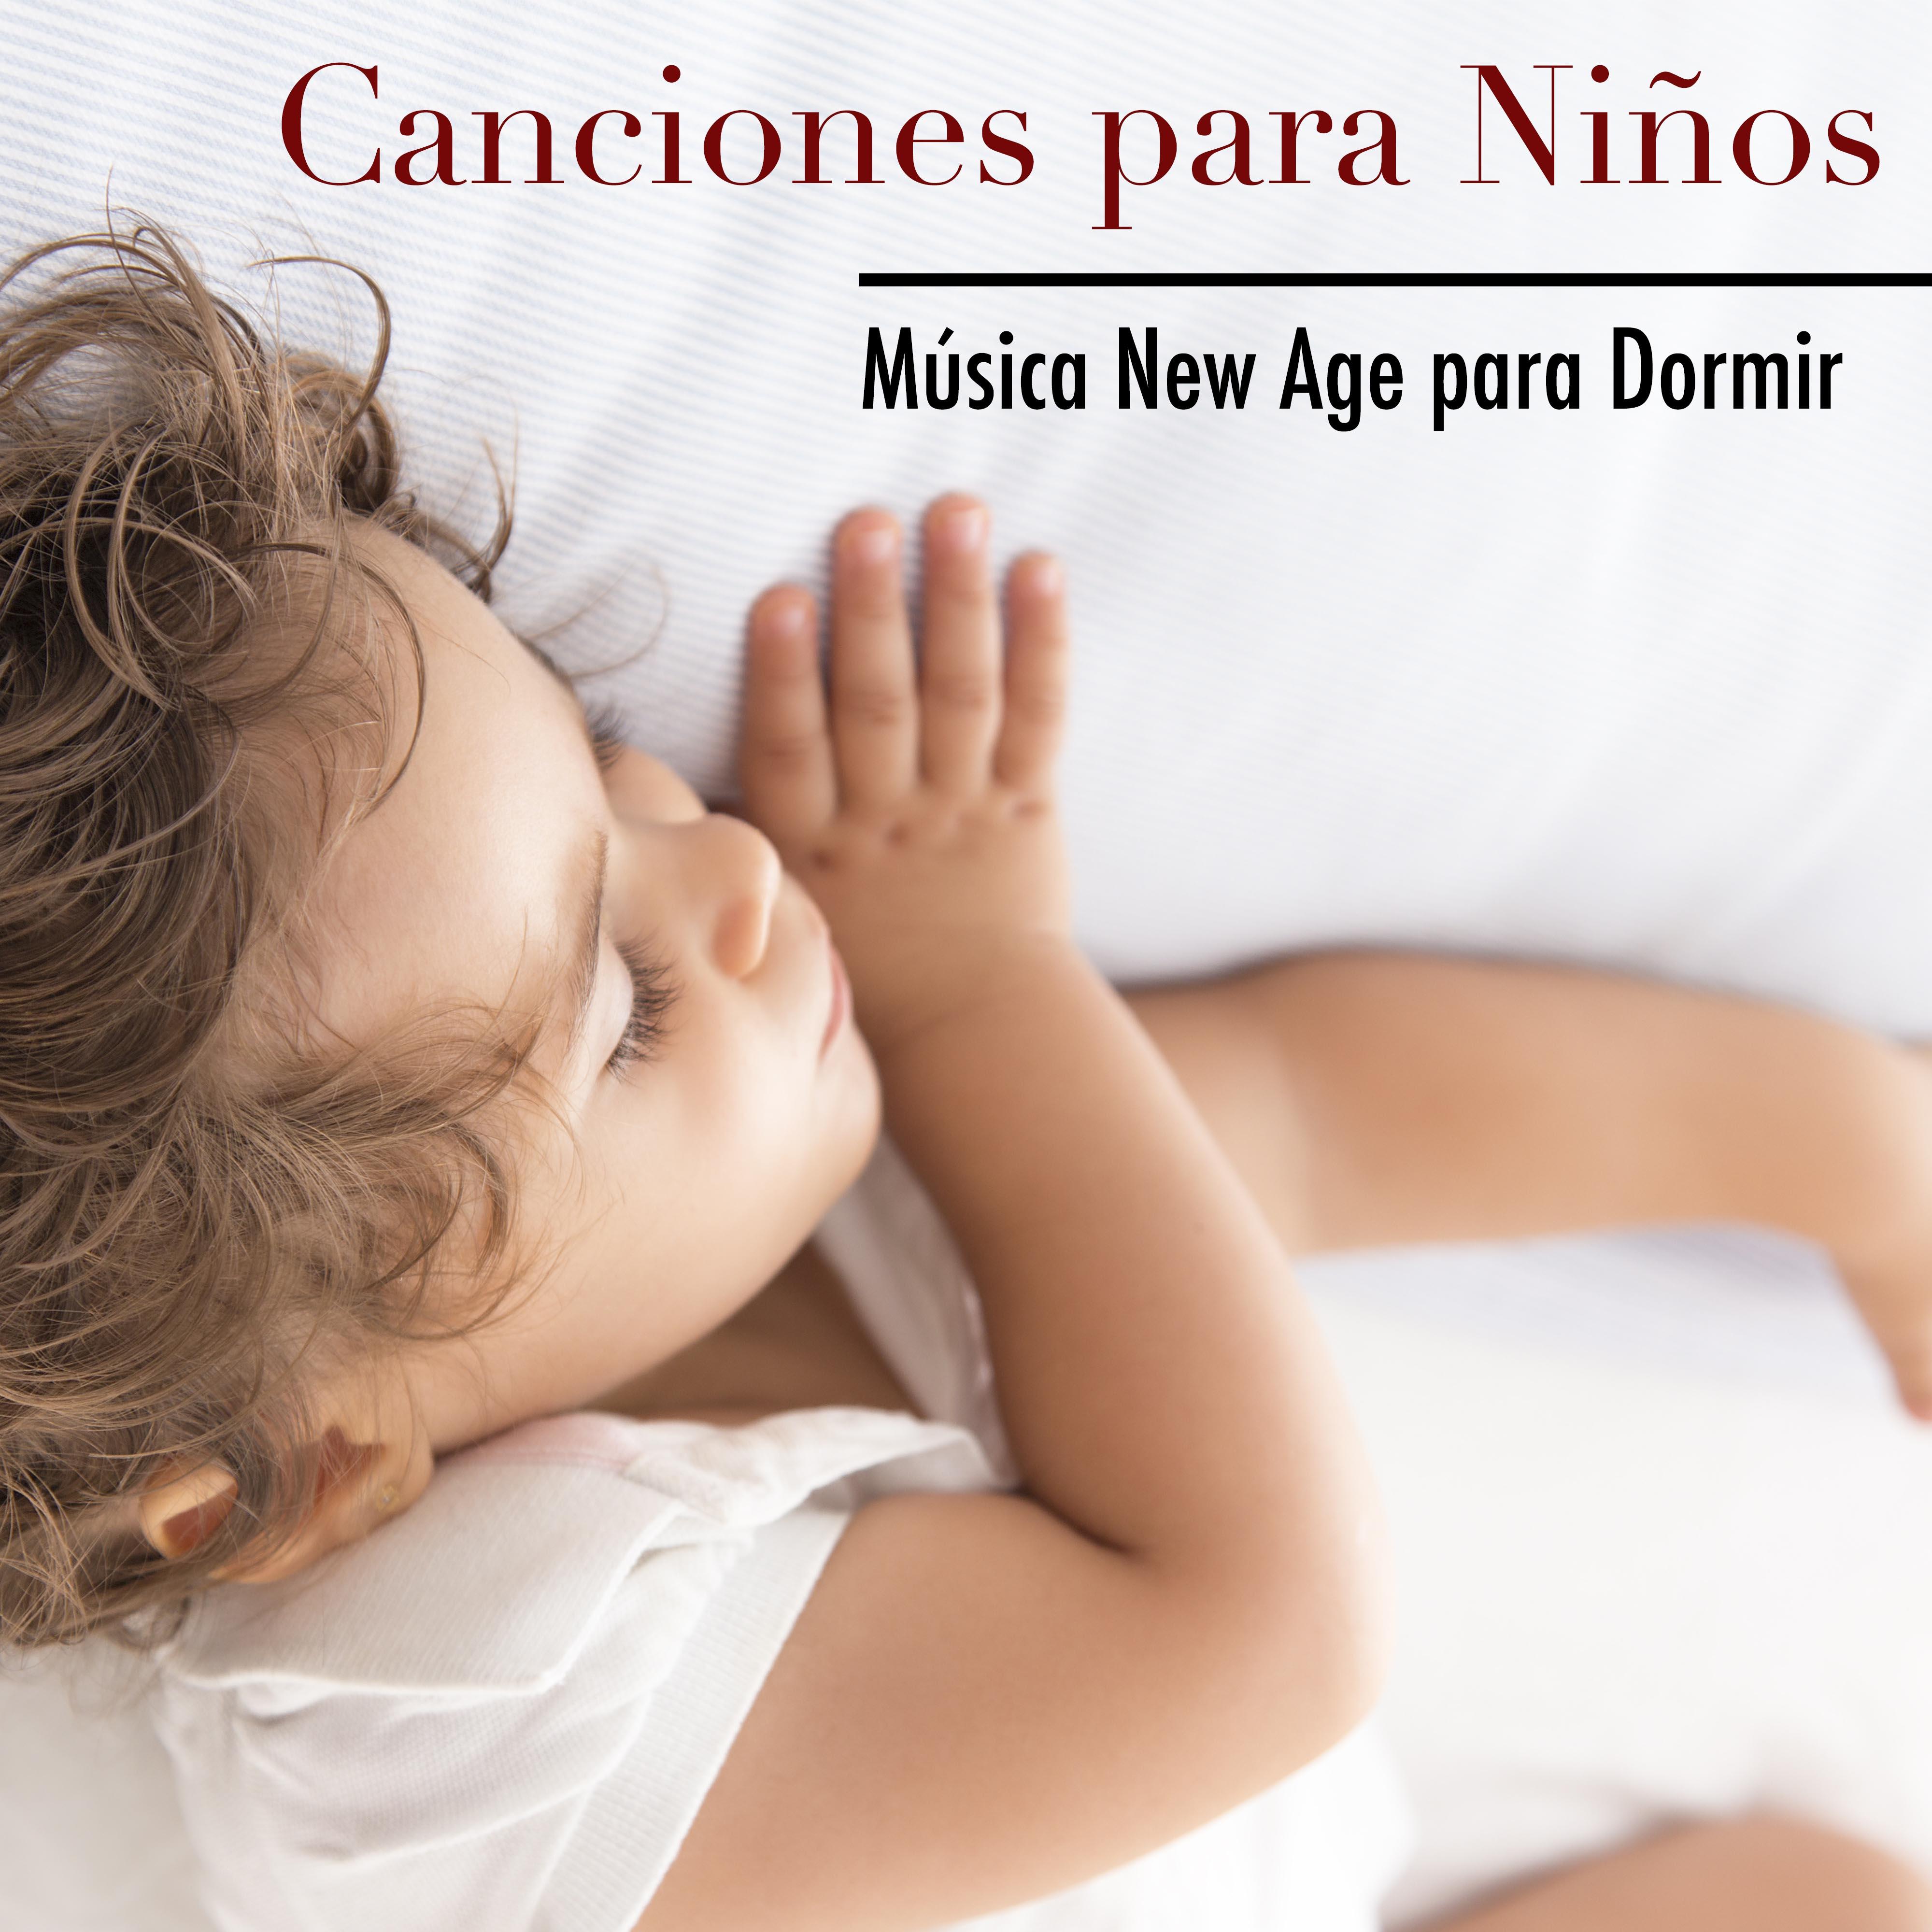 Canciones para Ni os  Mu sica New Age para Dormir y Canciones de Cuna para Bebes con Sonidos de la Naturaleza